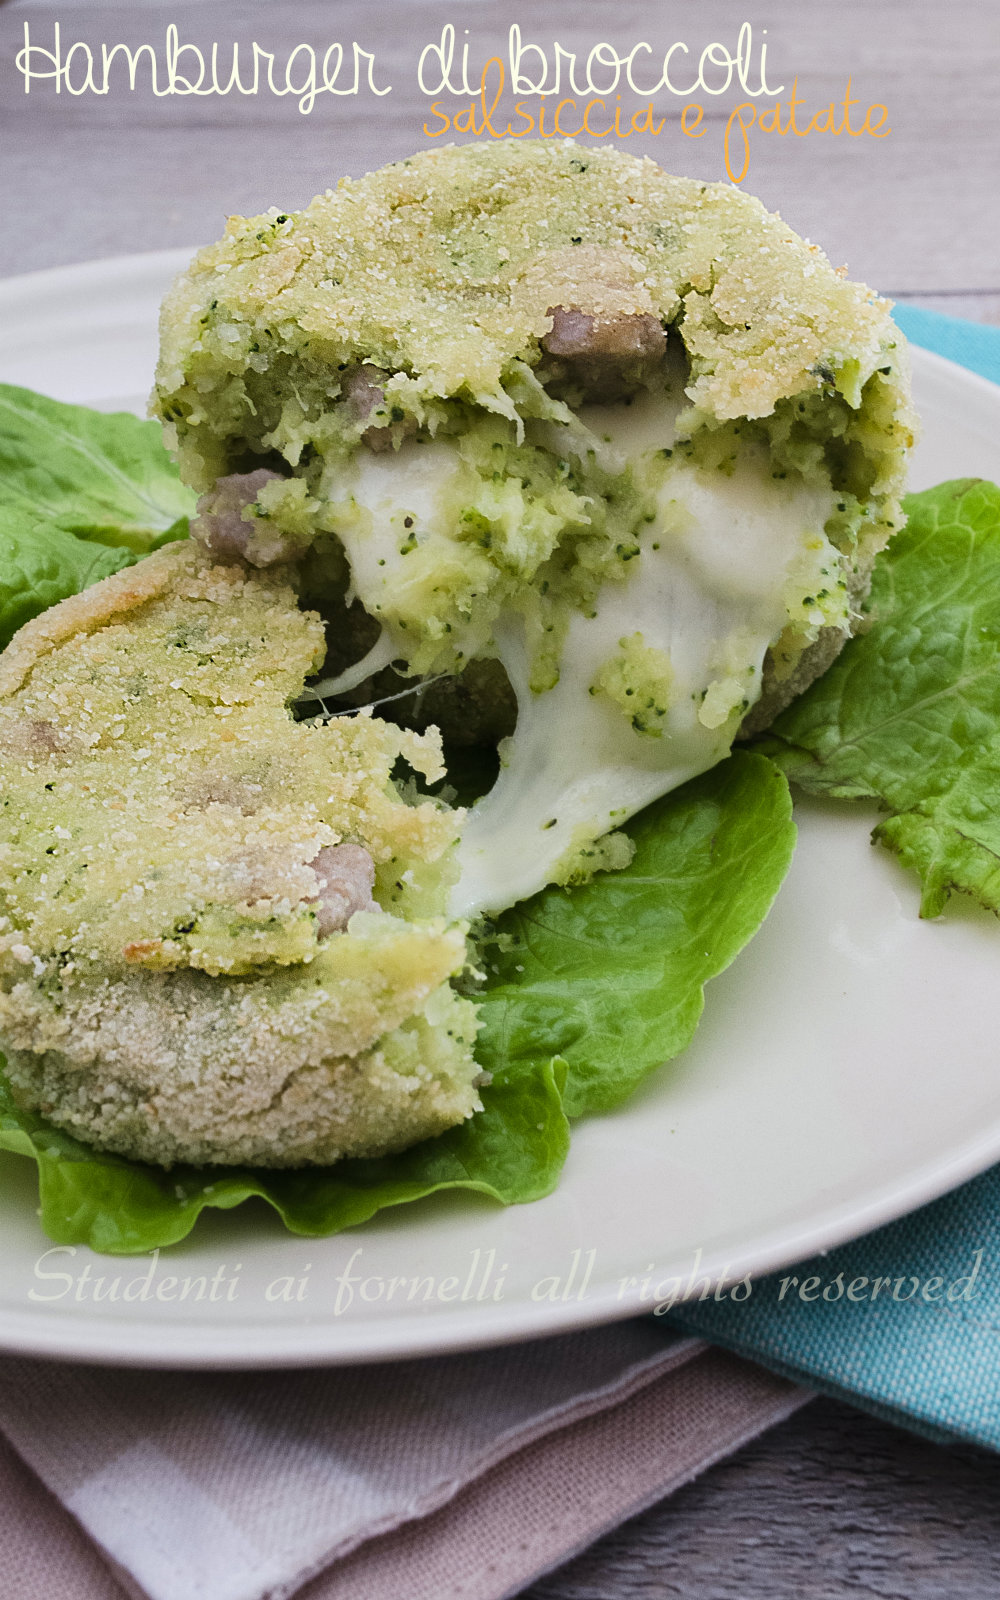 hmburger di broccoli salsiccia e patate con scamorza filante cotti in forno ricetta leggera e gustosa